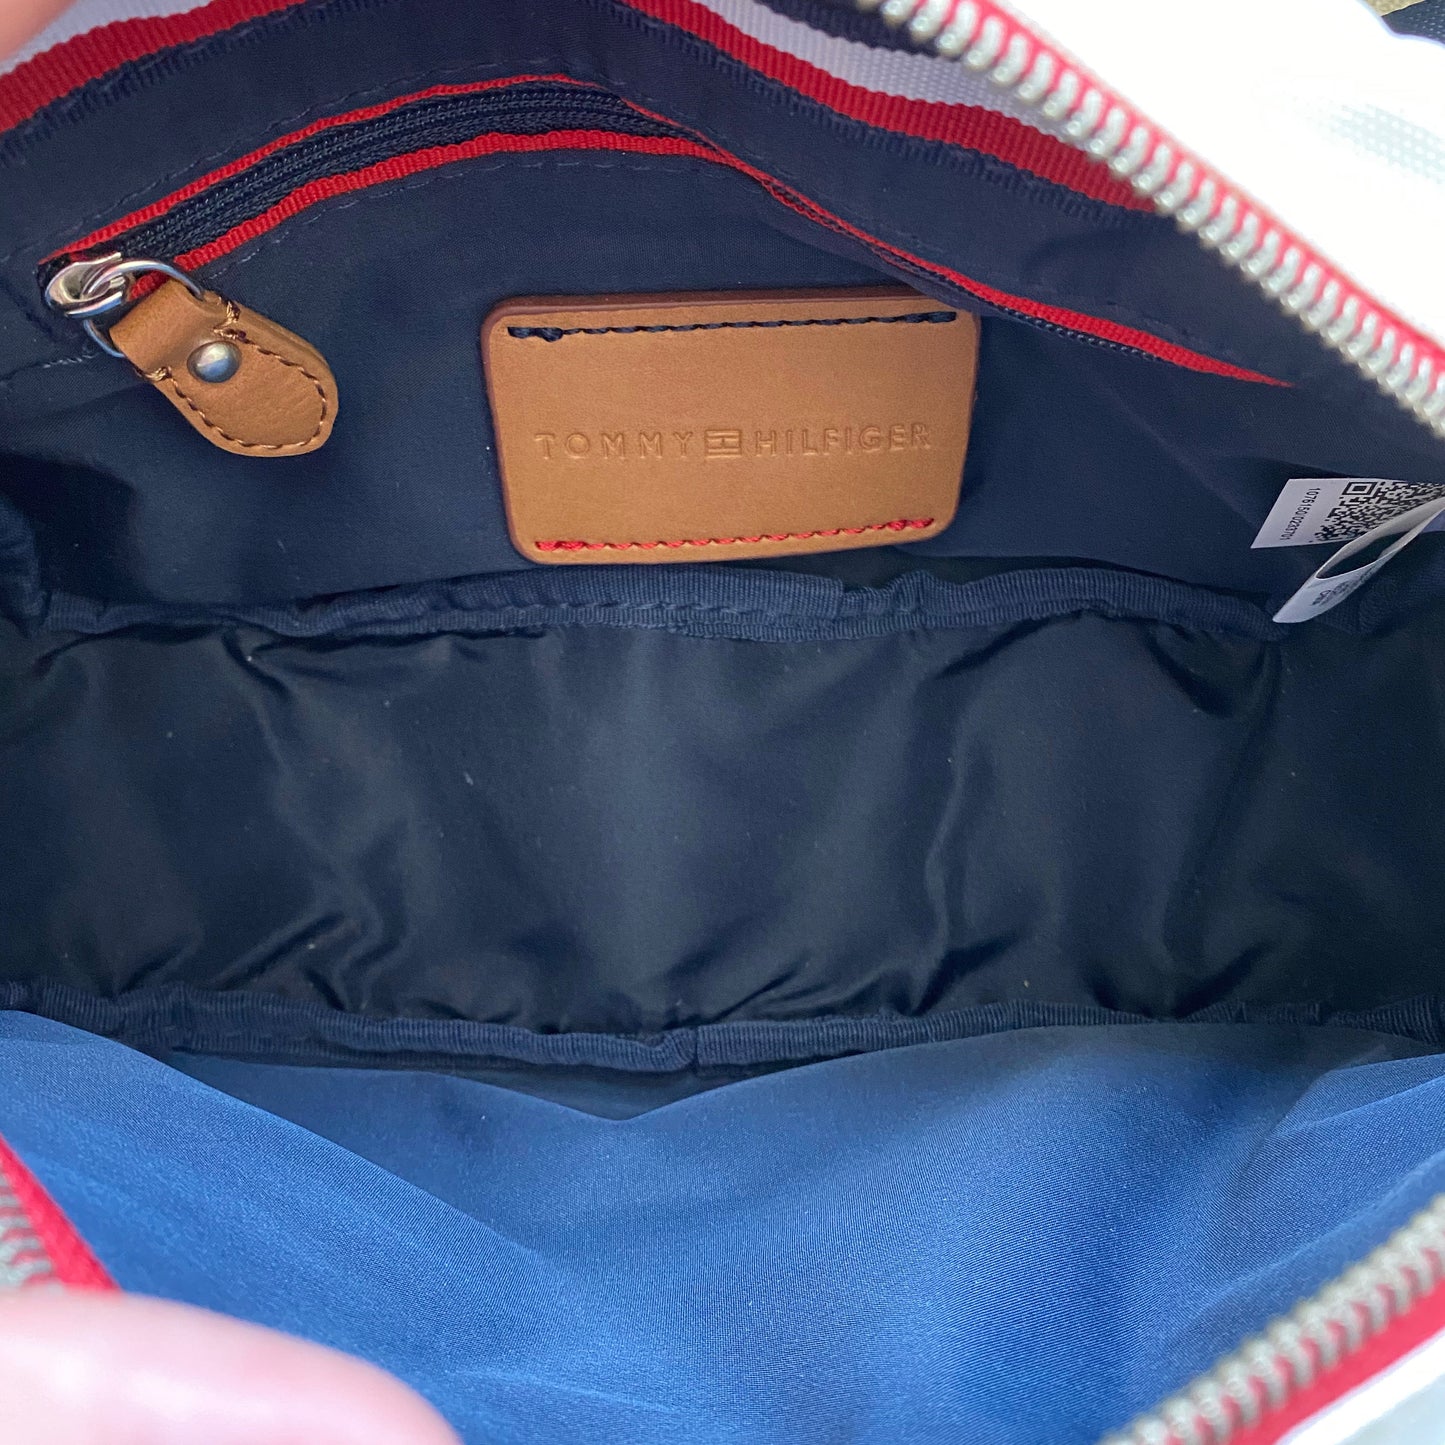 Tommy Hilfiger Canvas Adjustable Fanny Pack Travel Bag